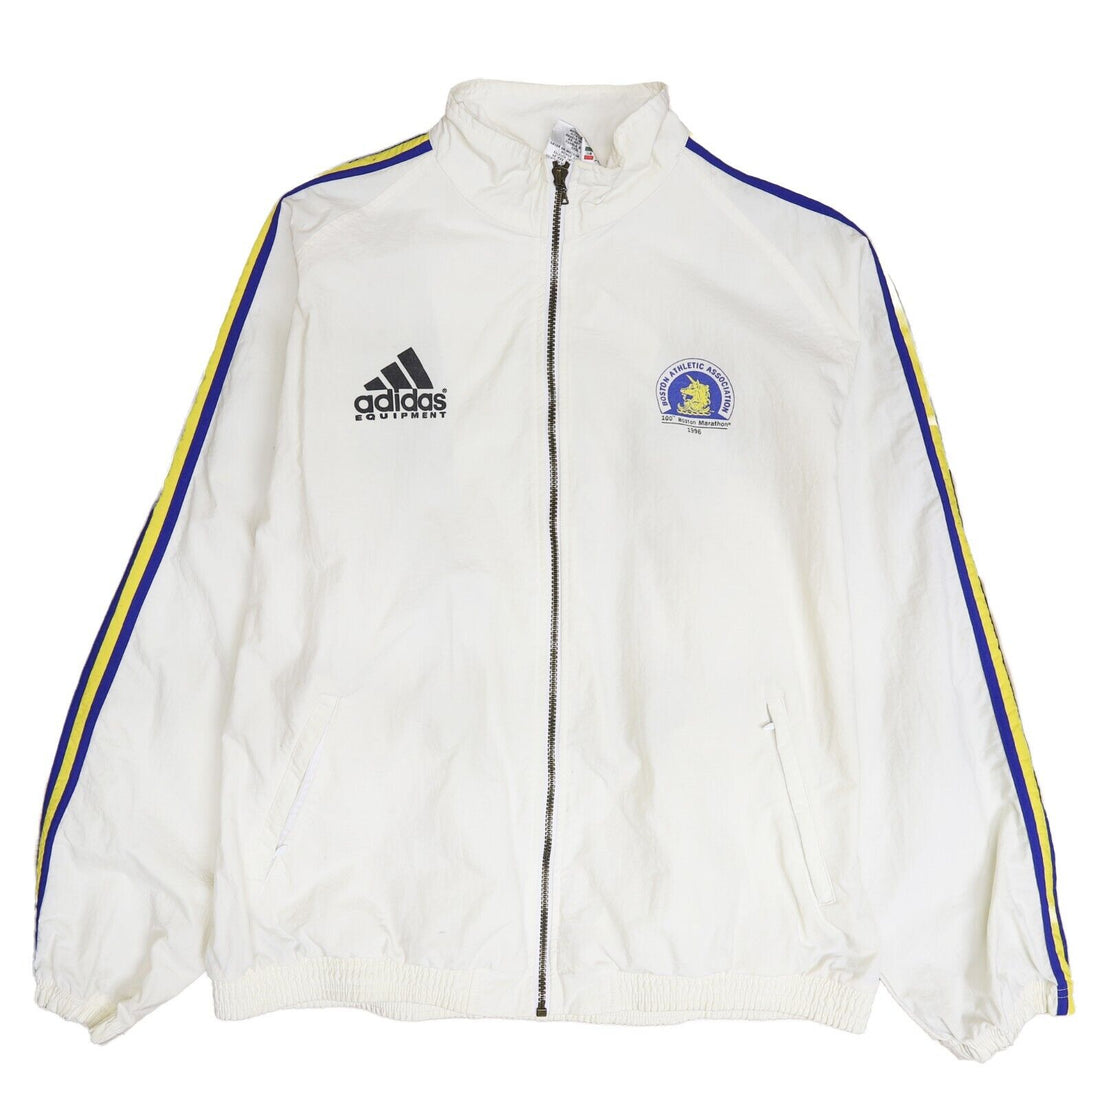 Vintage Adidas 100th Boston Marathon Windbreaker Light Jacket Large 1996 90s